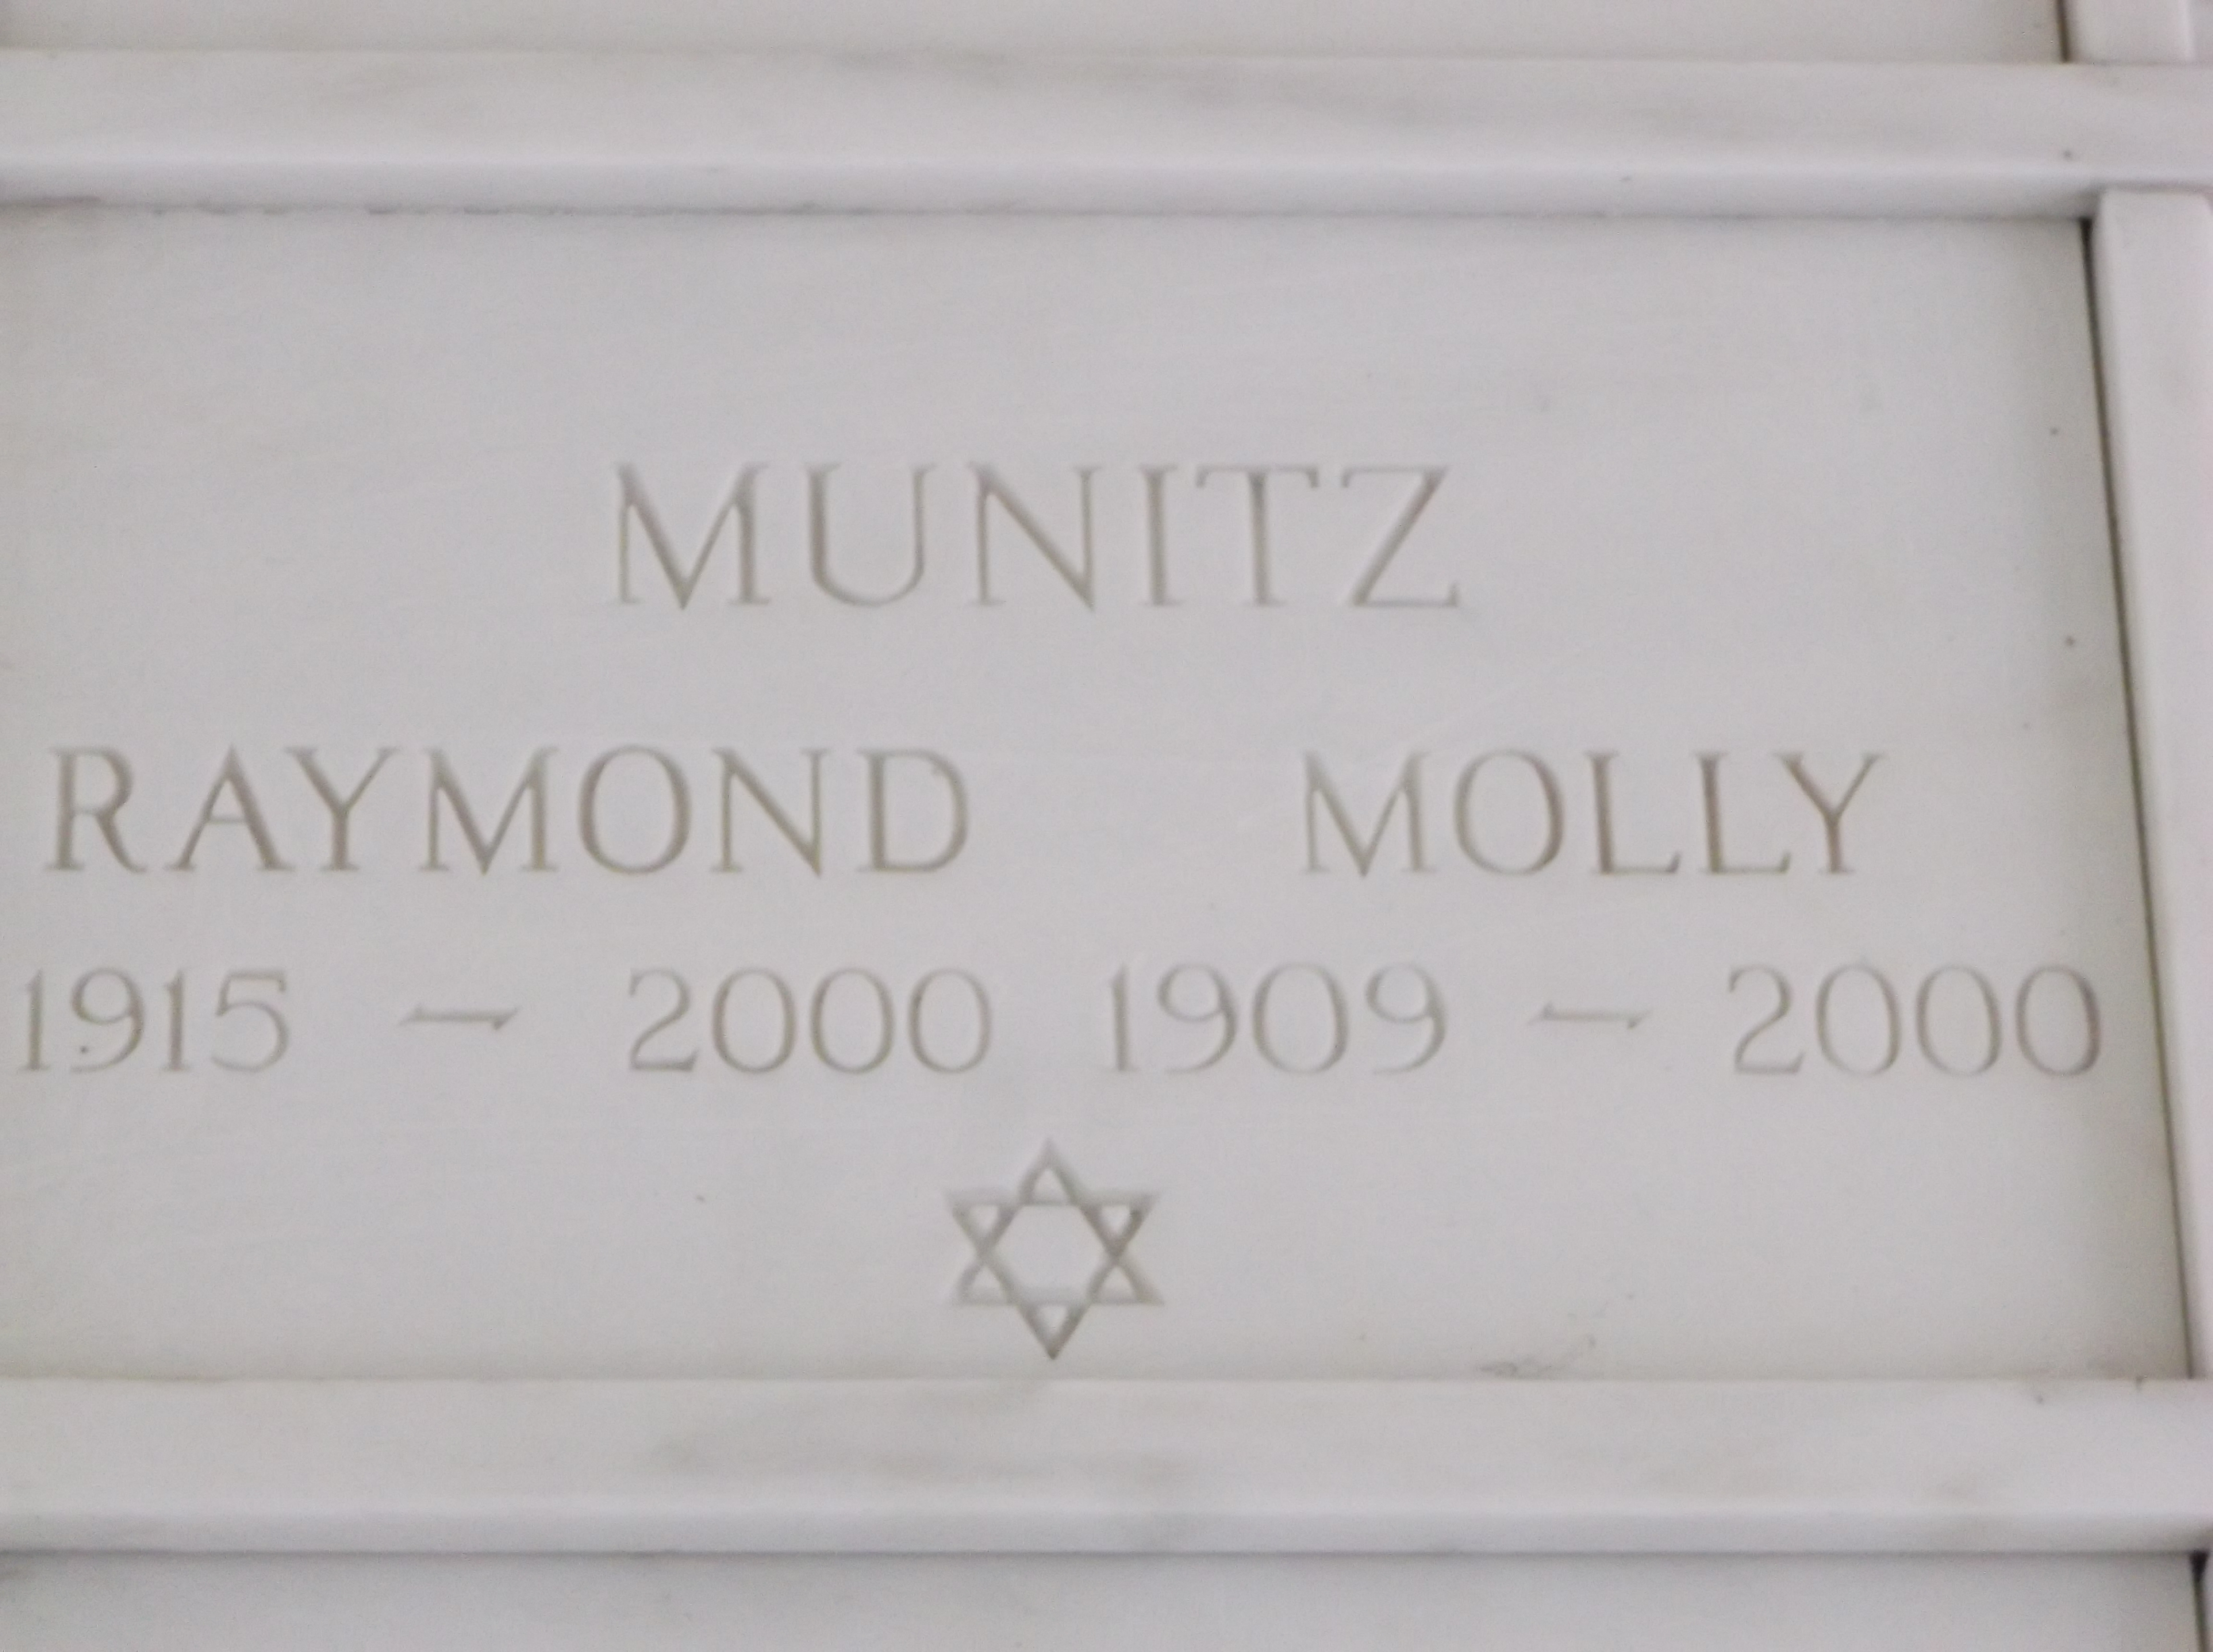 Raymond Munitz